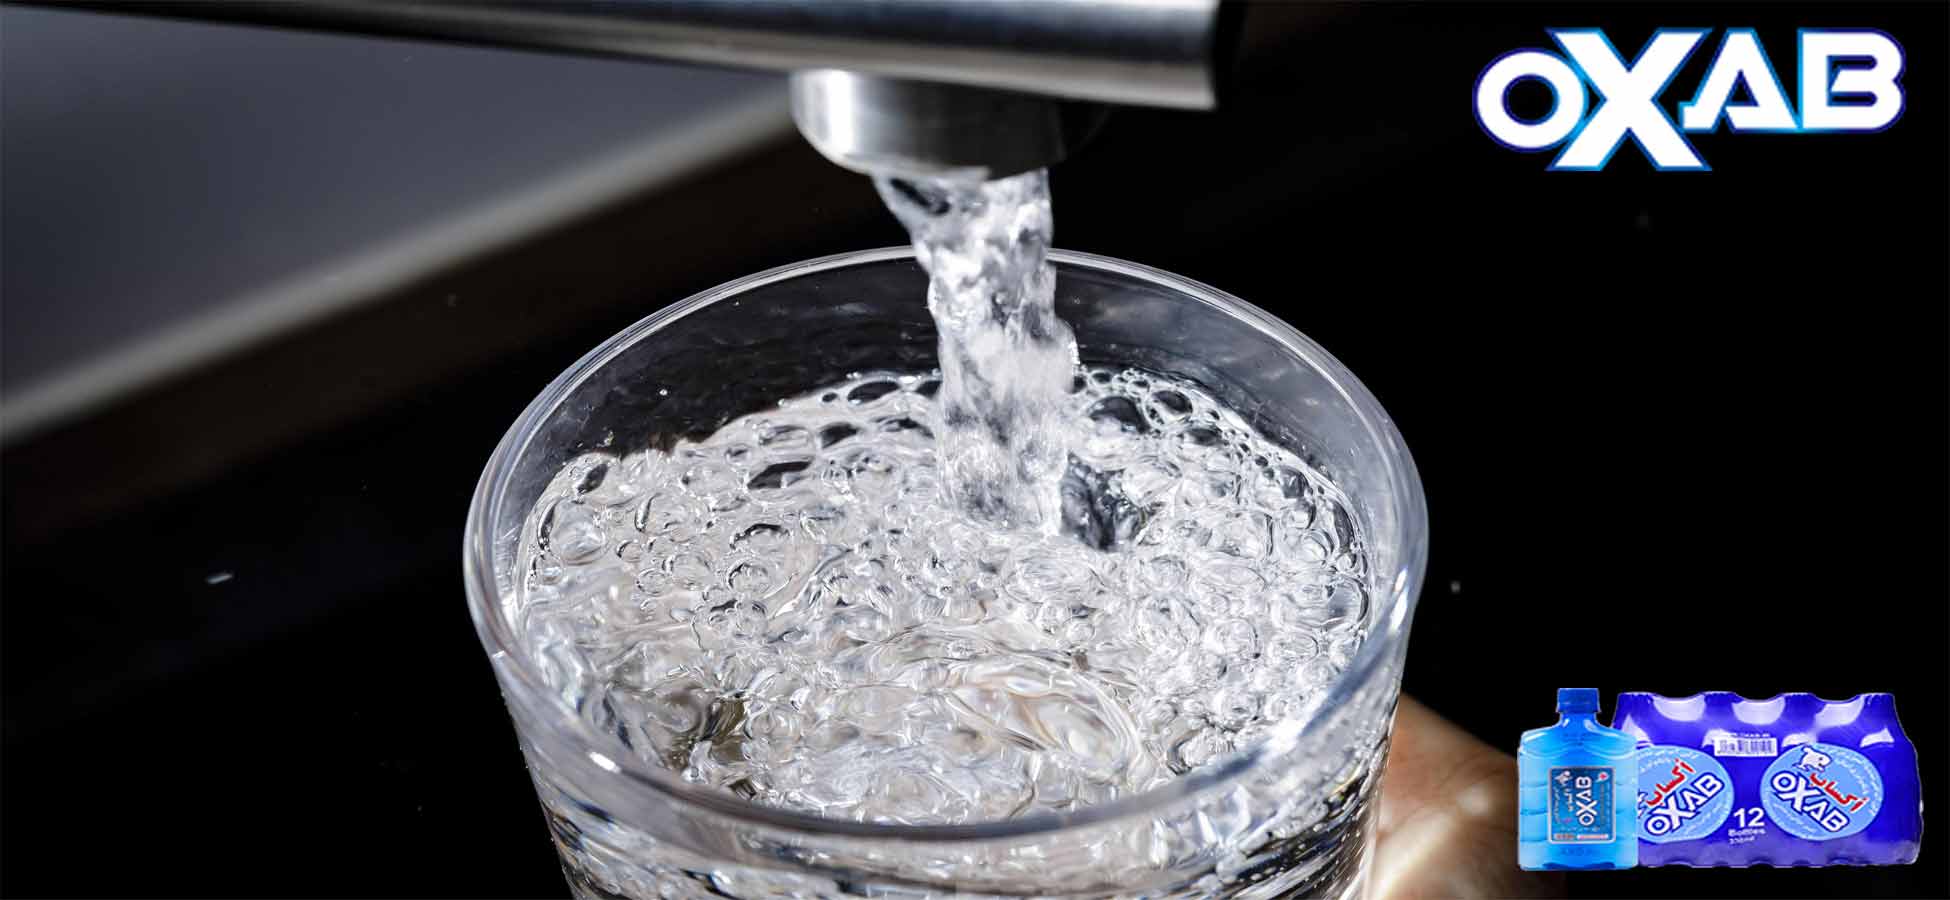 آیا آب جوشیده برای آشامیدن مناسب است؟